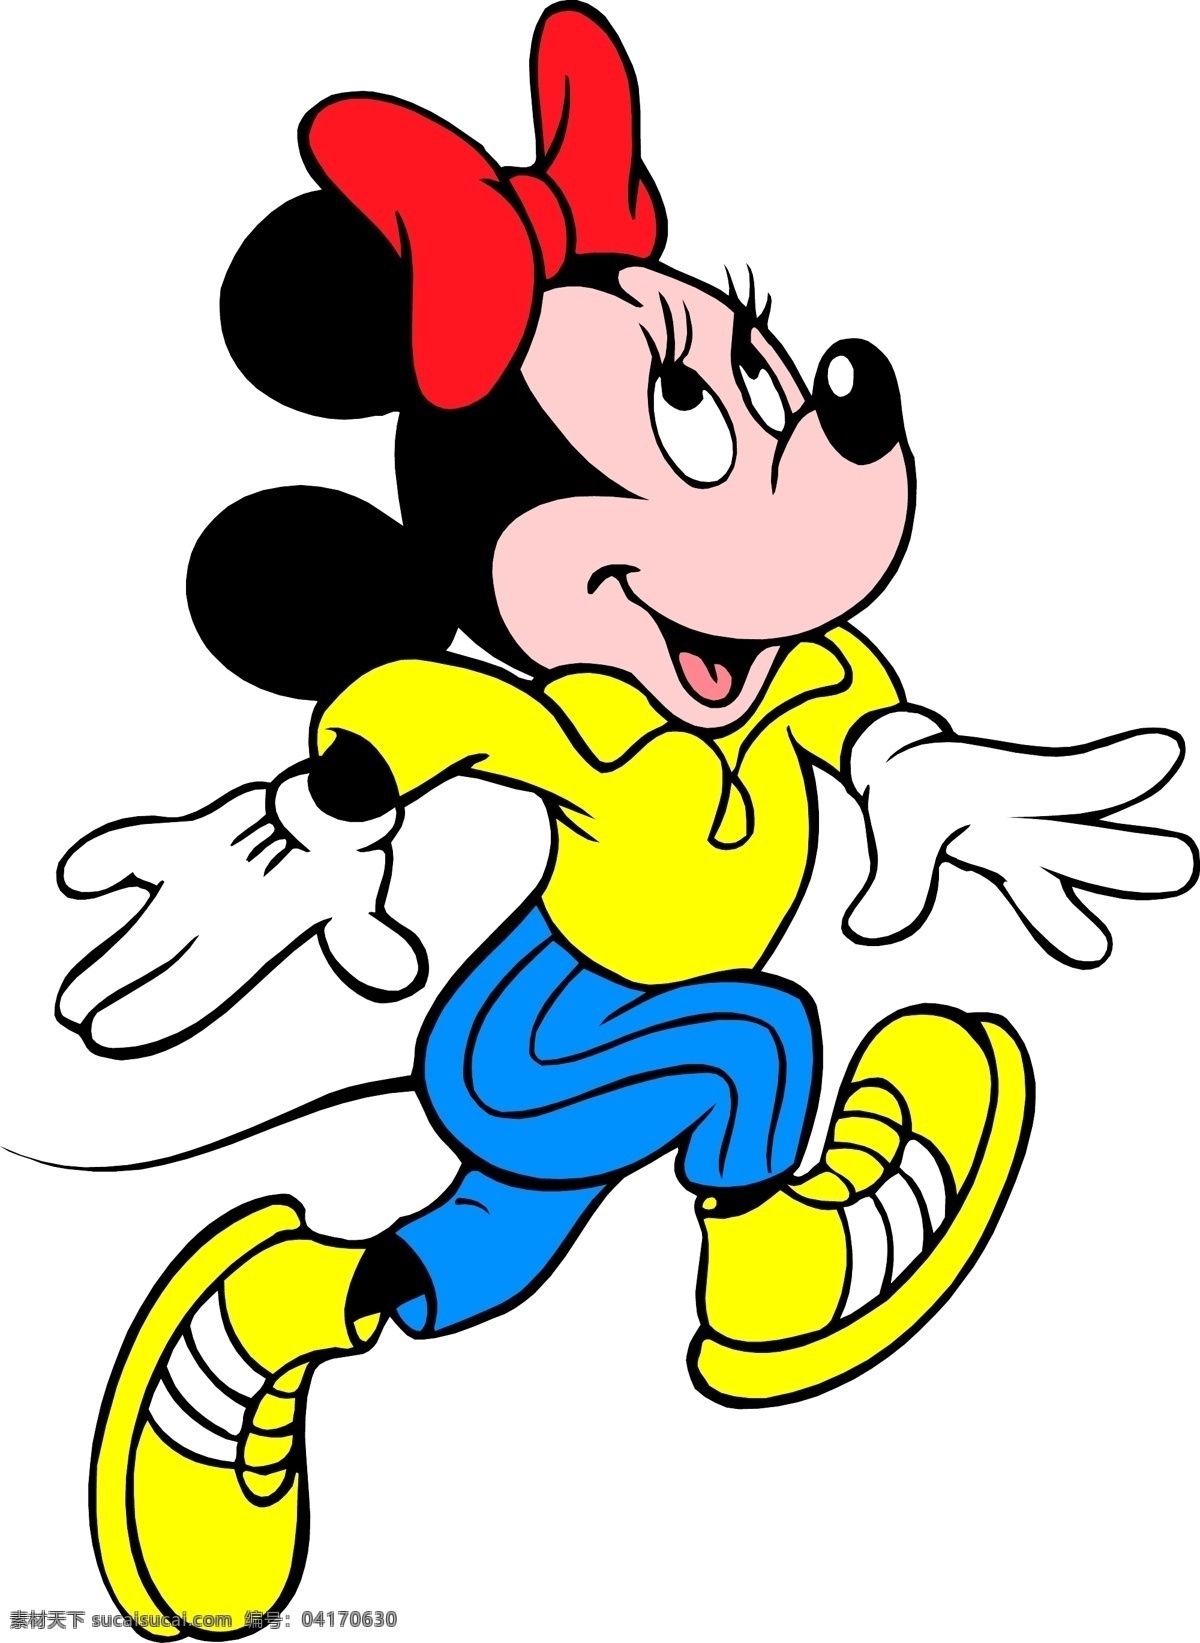 米妮 迪士尼 迪斯尼 米老鼠 矢量 卡通设计 老鼠 卡通 儿童 漫画 线描 学生本本 唐老鸭 哈巴狗 卡通类 动漫动画 动漫人物